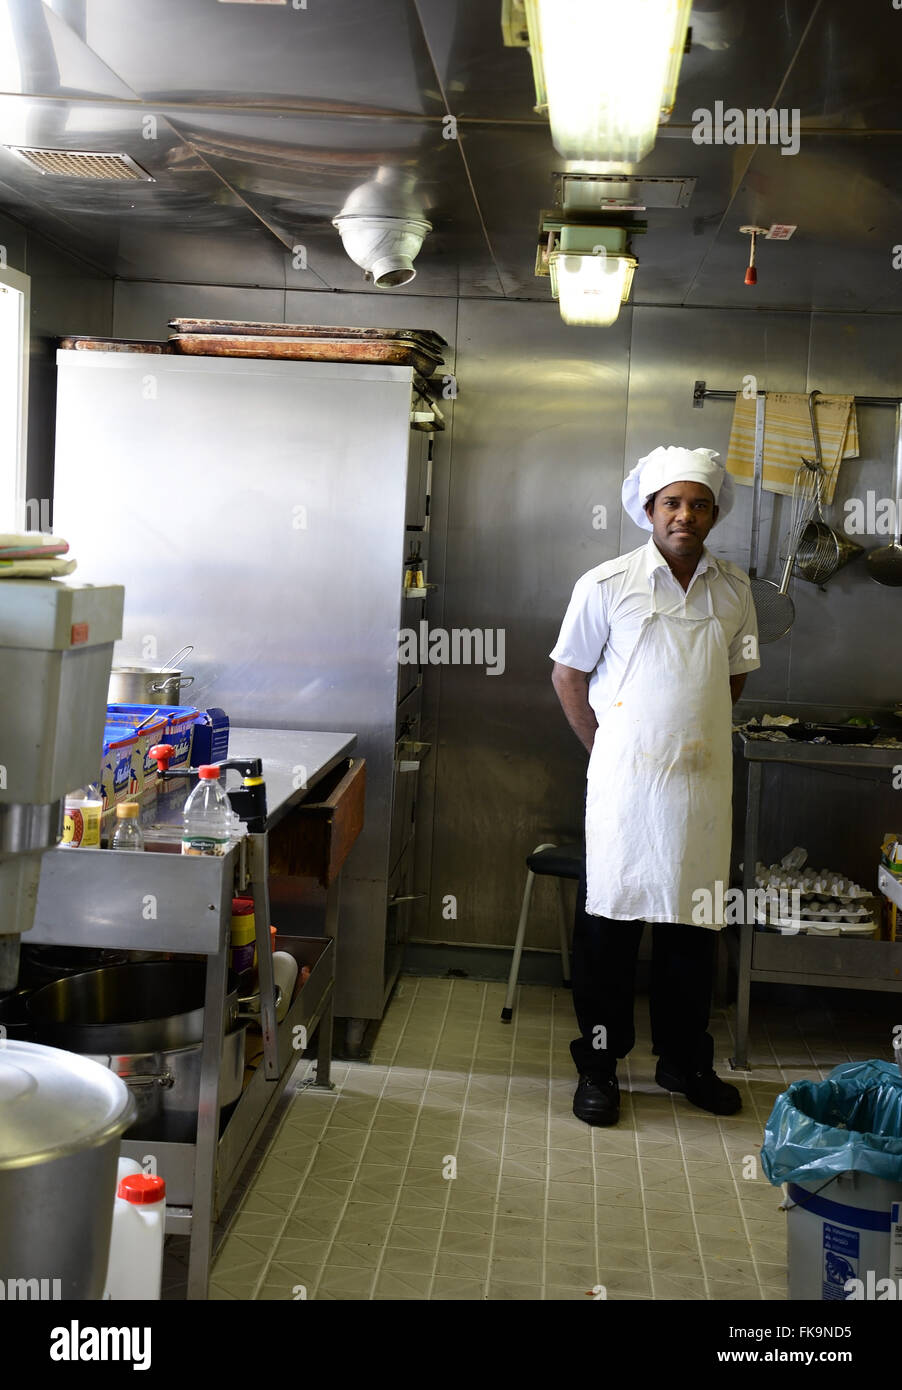 Chef cuisinier de navire pose pour photo dans Utrillo Container Ship galley. Banque D'Images